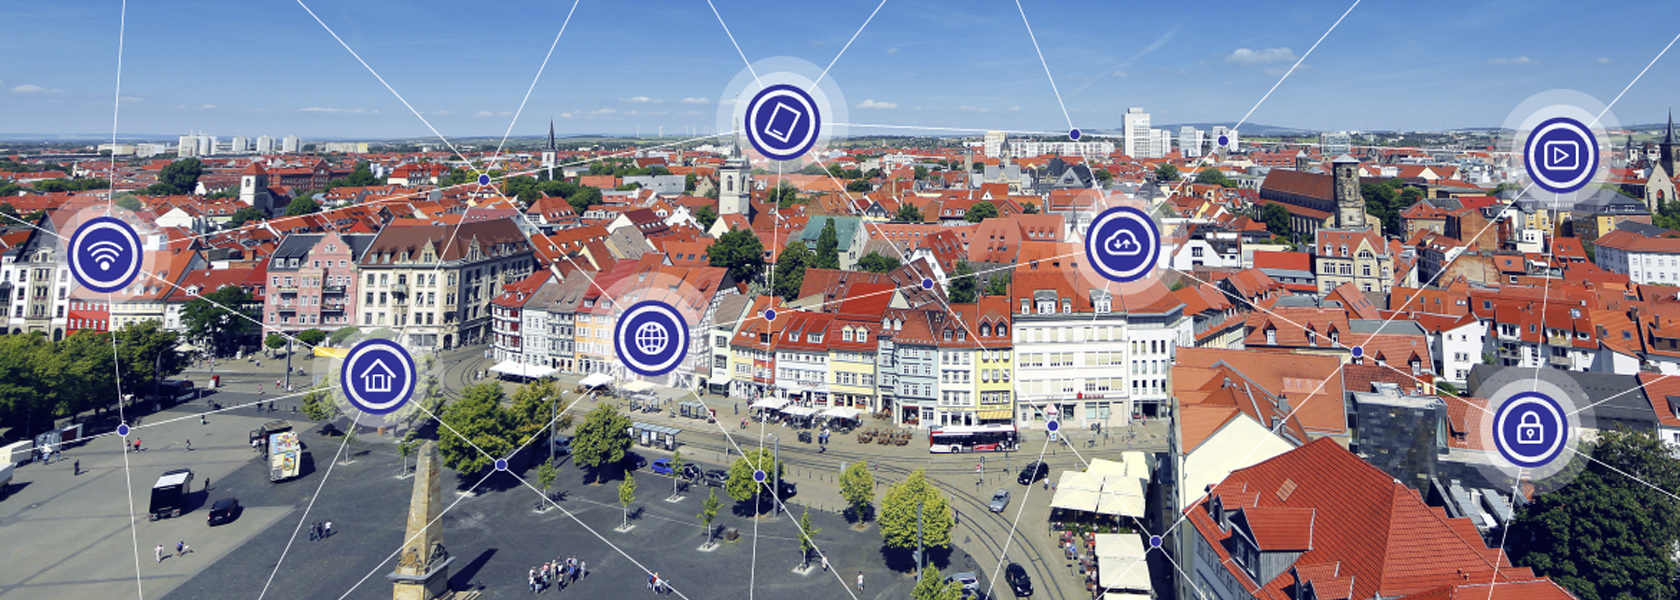 Headerbild zeigt die Erfurter Innenstadt